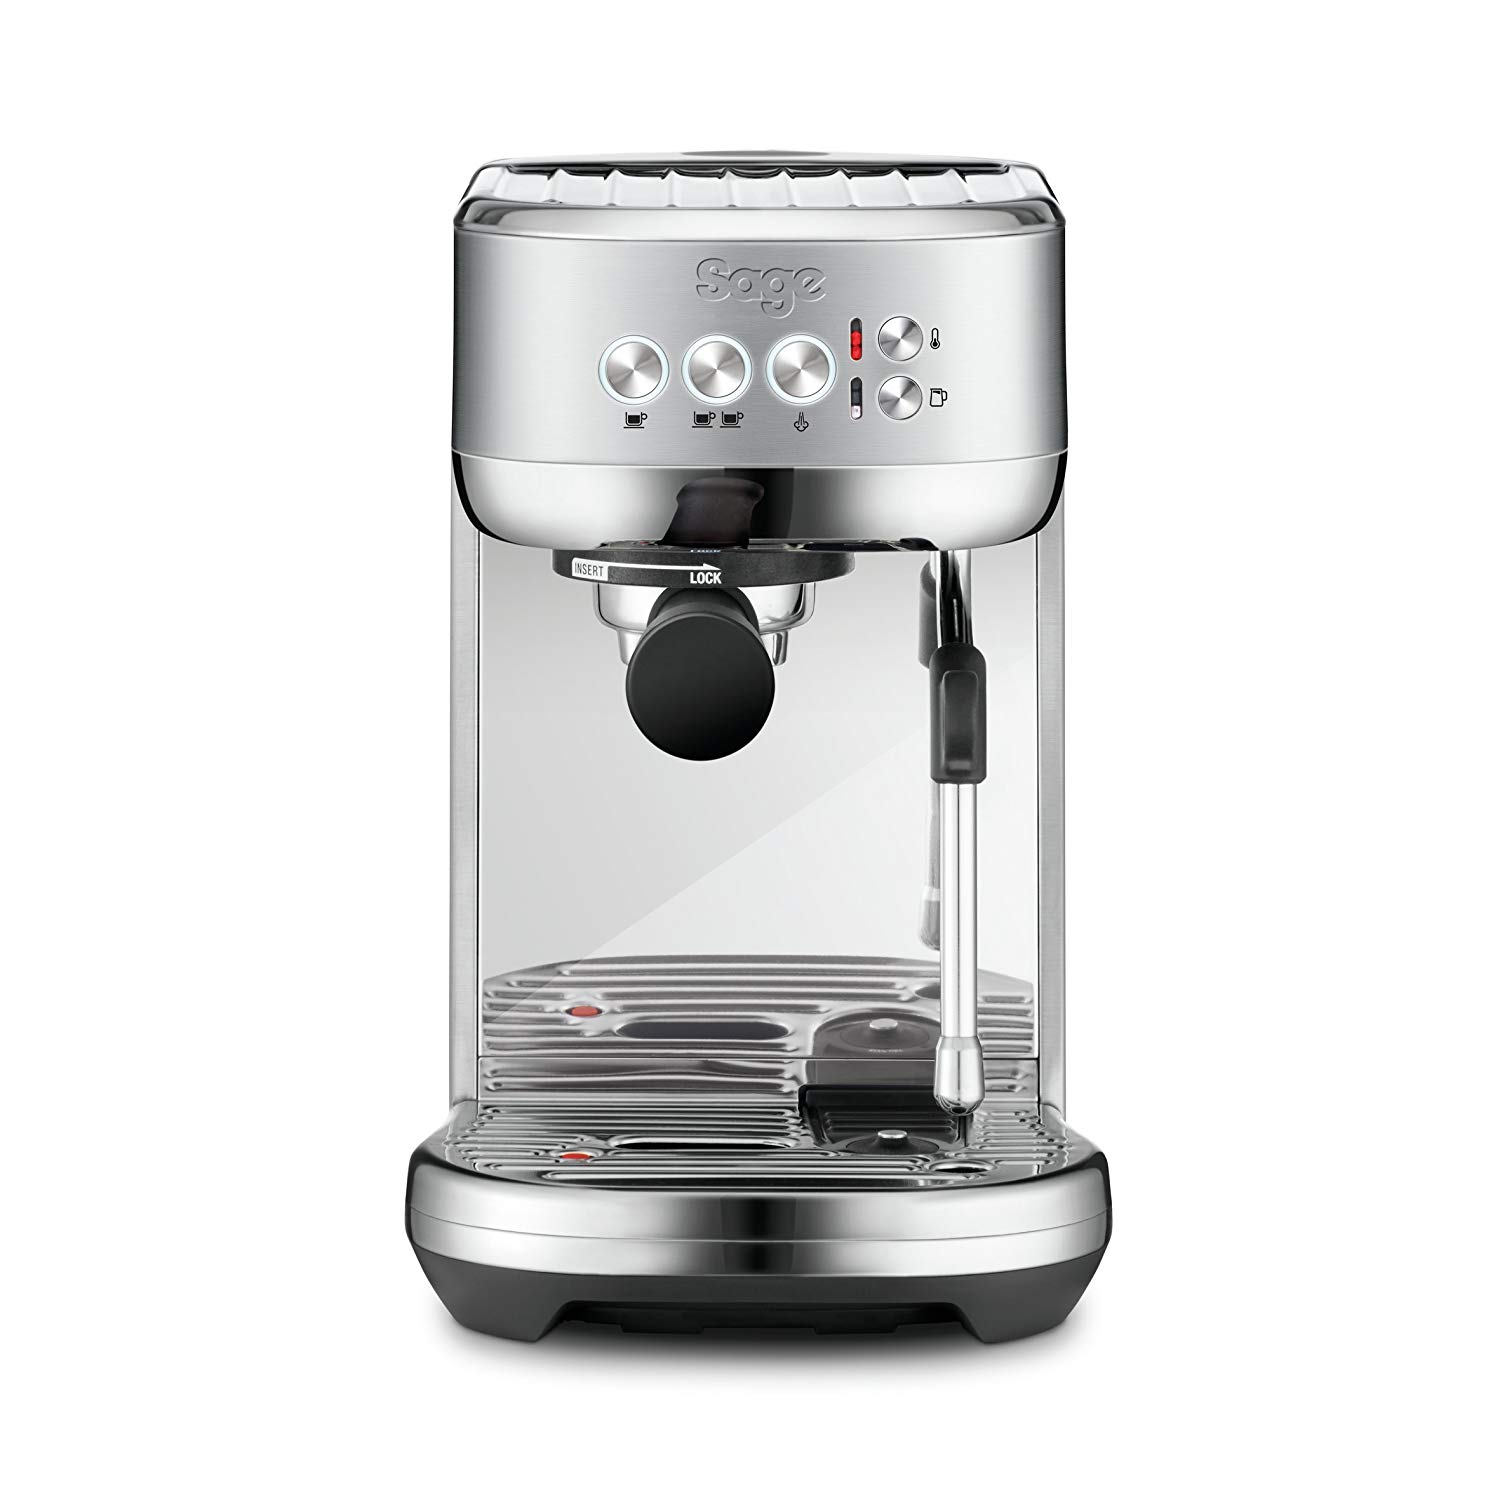 Máquina de café espresso Sage solo 292,8€